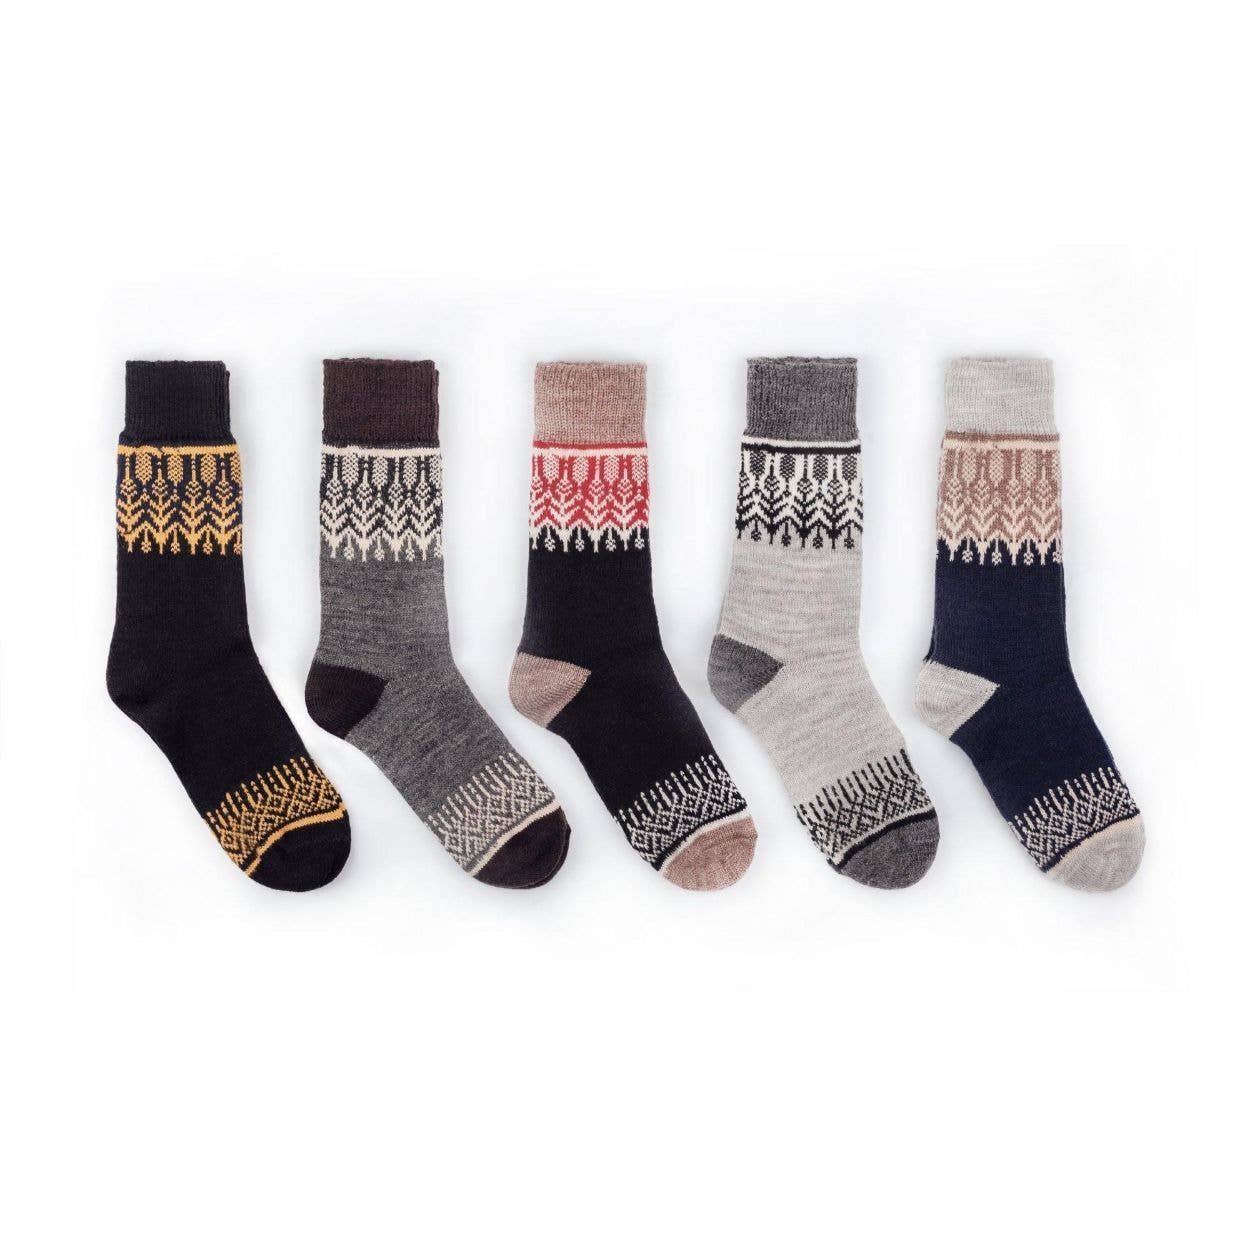 Nordic Socks Merino Wool PERFORM™ Warm (Yule) - Unisex